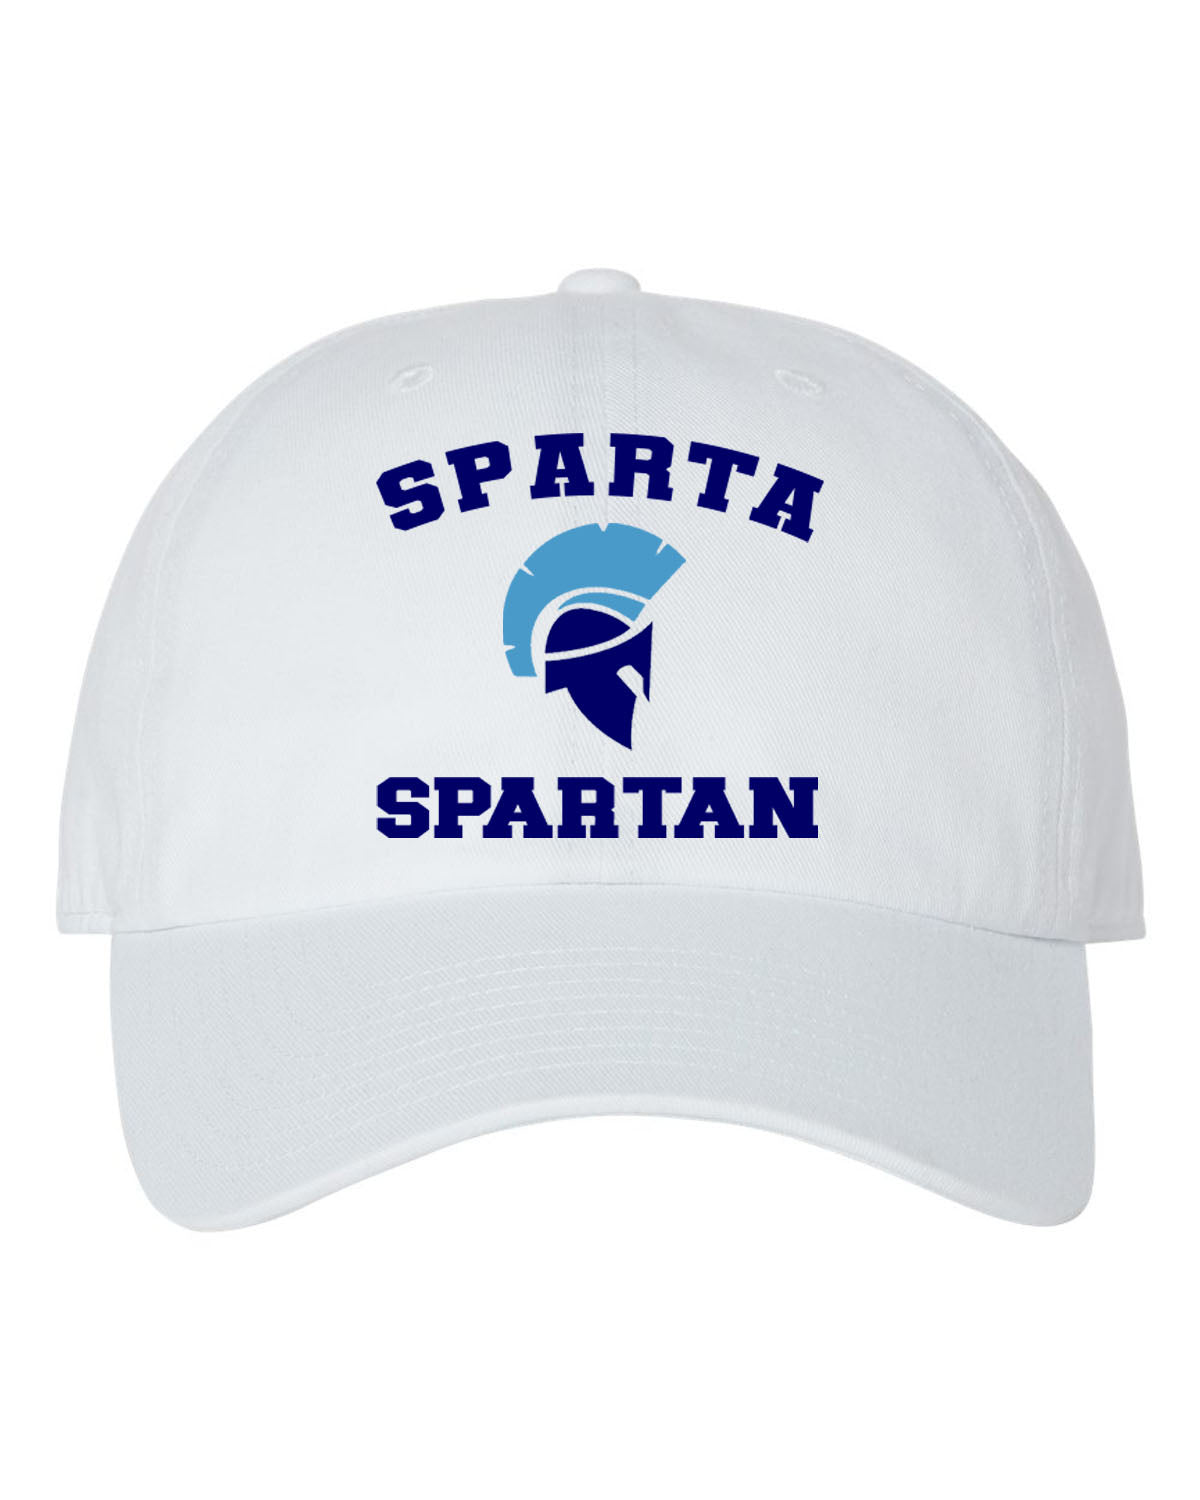 Sparta School Design 1 Trucker Hat